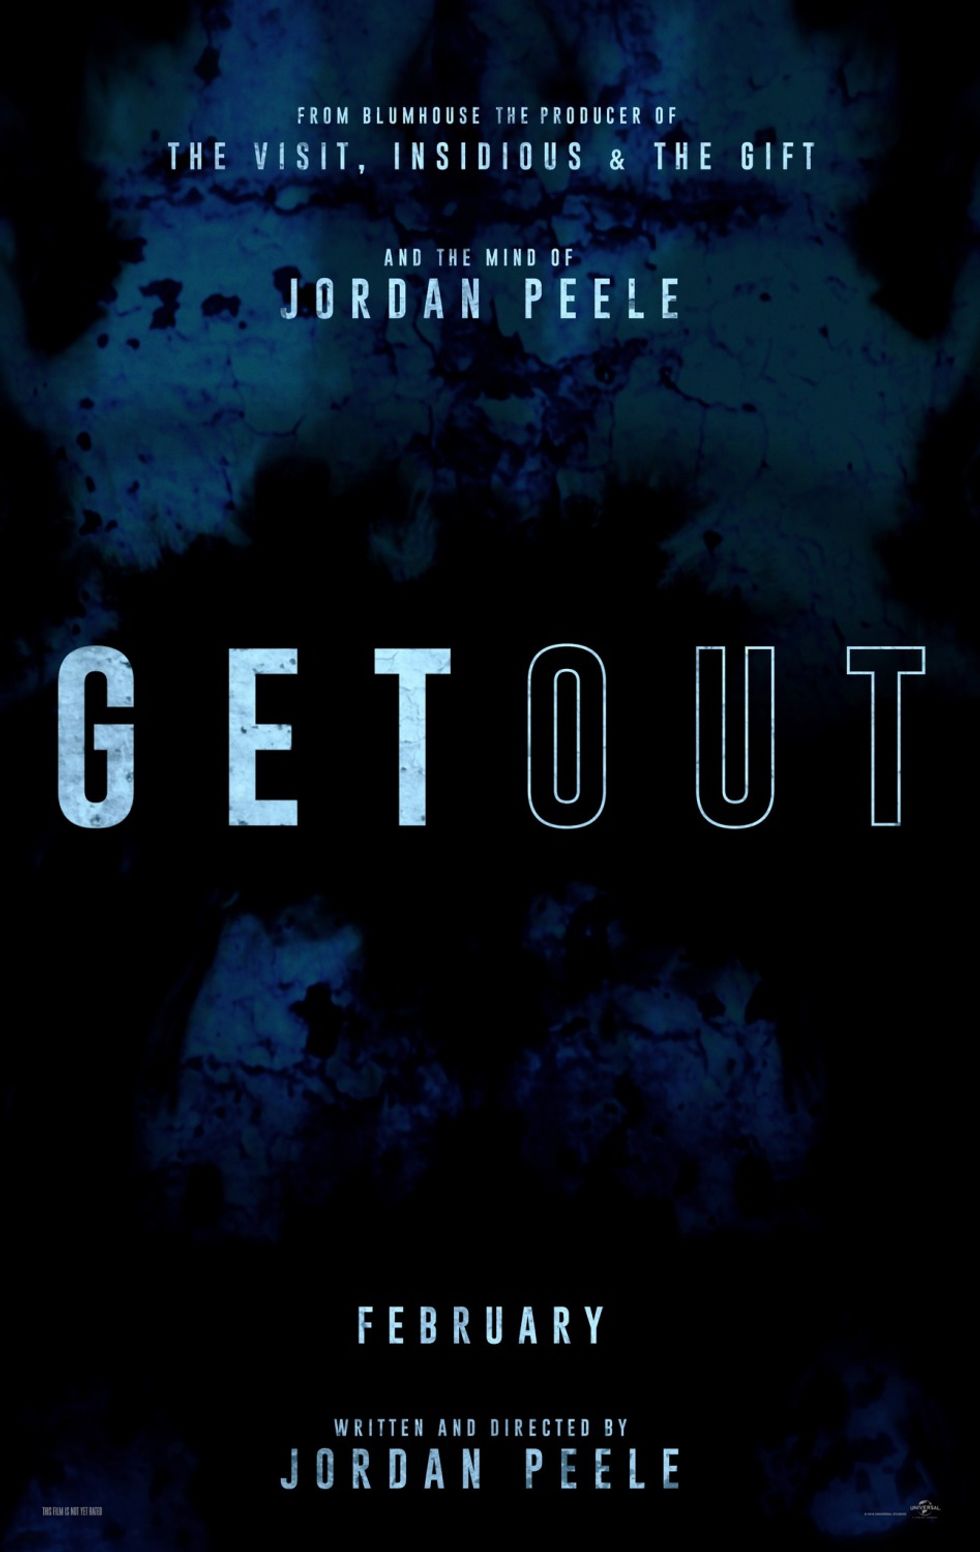 "Get Out": Jordan Peele's Creative Criticism